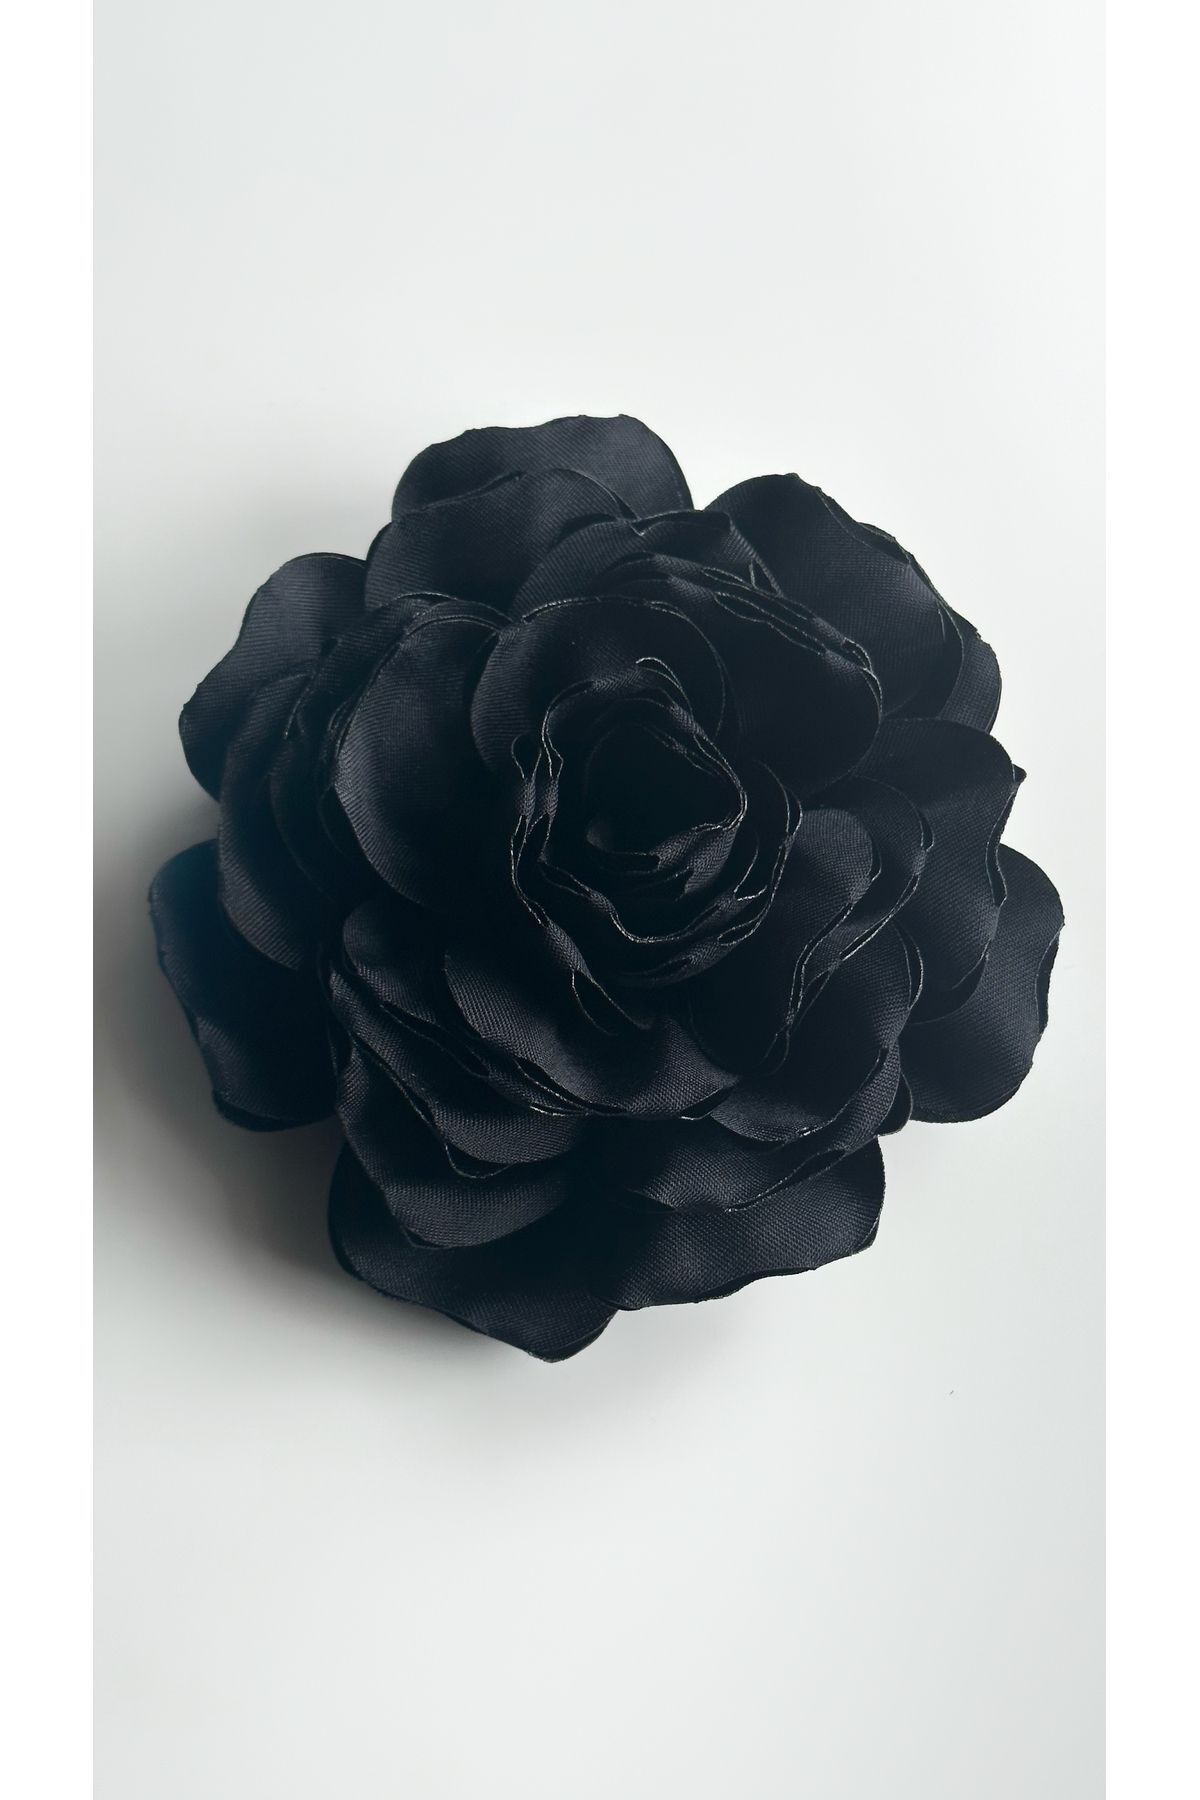 Âlâ Atelier İğneli Kumaş Çiçek Broş siyah Gül Broş